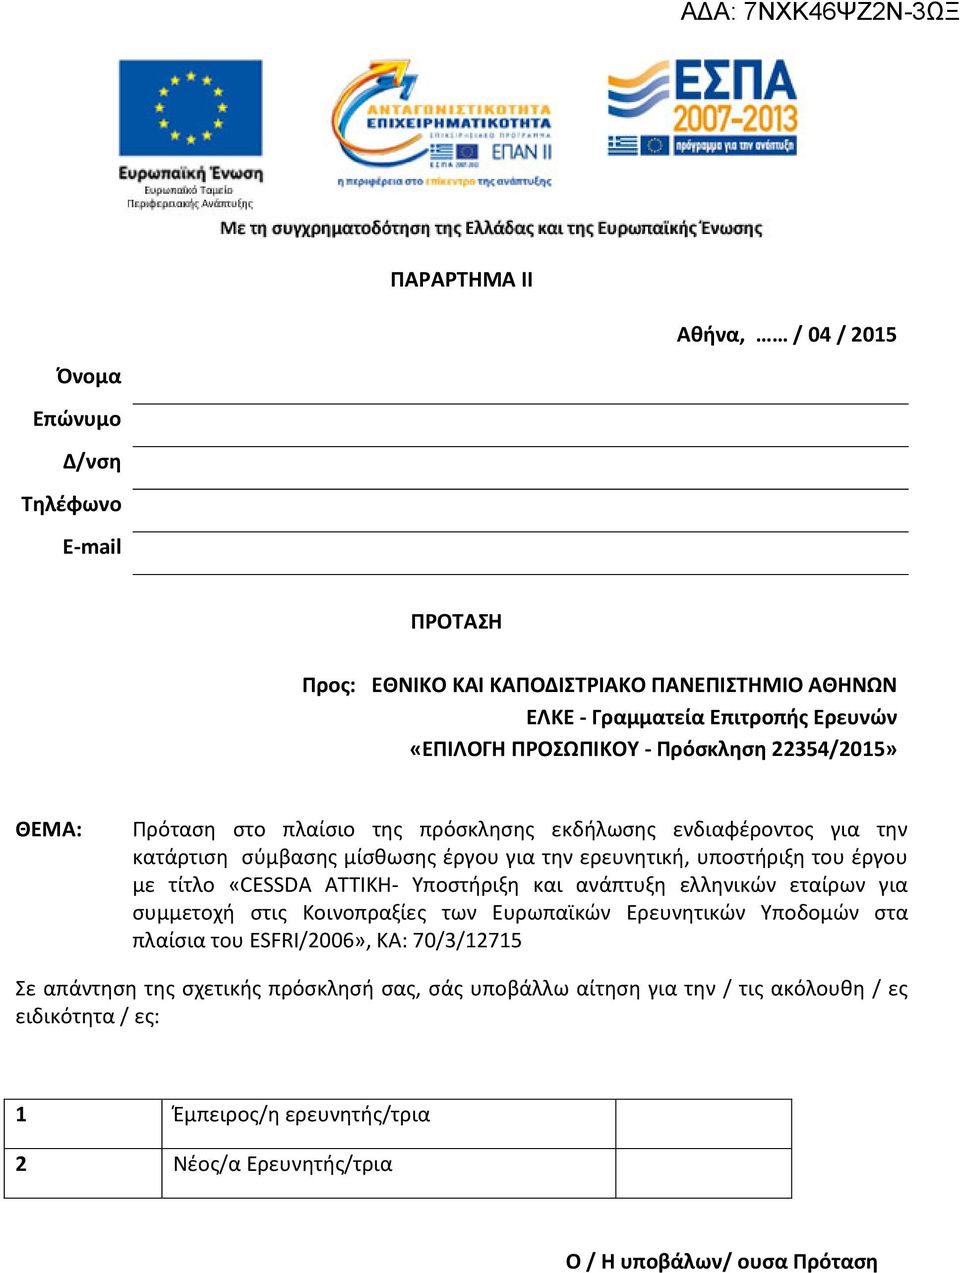 έργου με τίτλο «CESSDA ΑΤΤΙΚΗ- Υποστήριξη και ανάπτυξη ελληνικών εταίρων για συμμετοχή στις Κοινοπραξίες των Ευρωπαϊκών Ερευνητικών Υποδομών στα πλαίσια του ESFRI/2006», KA: